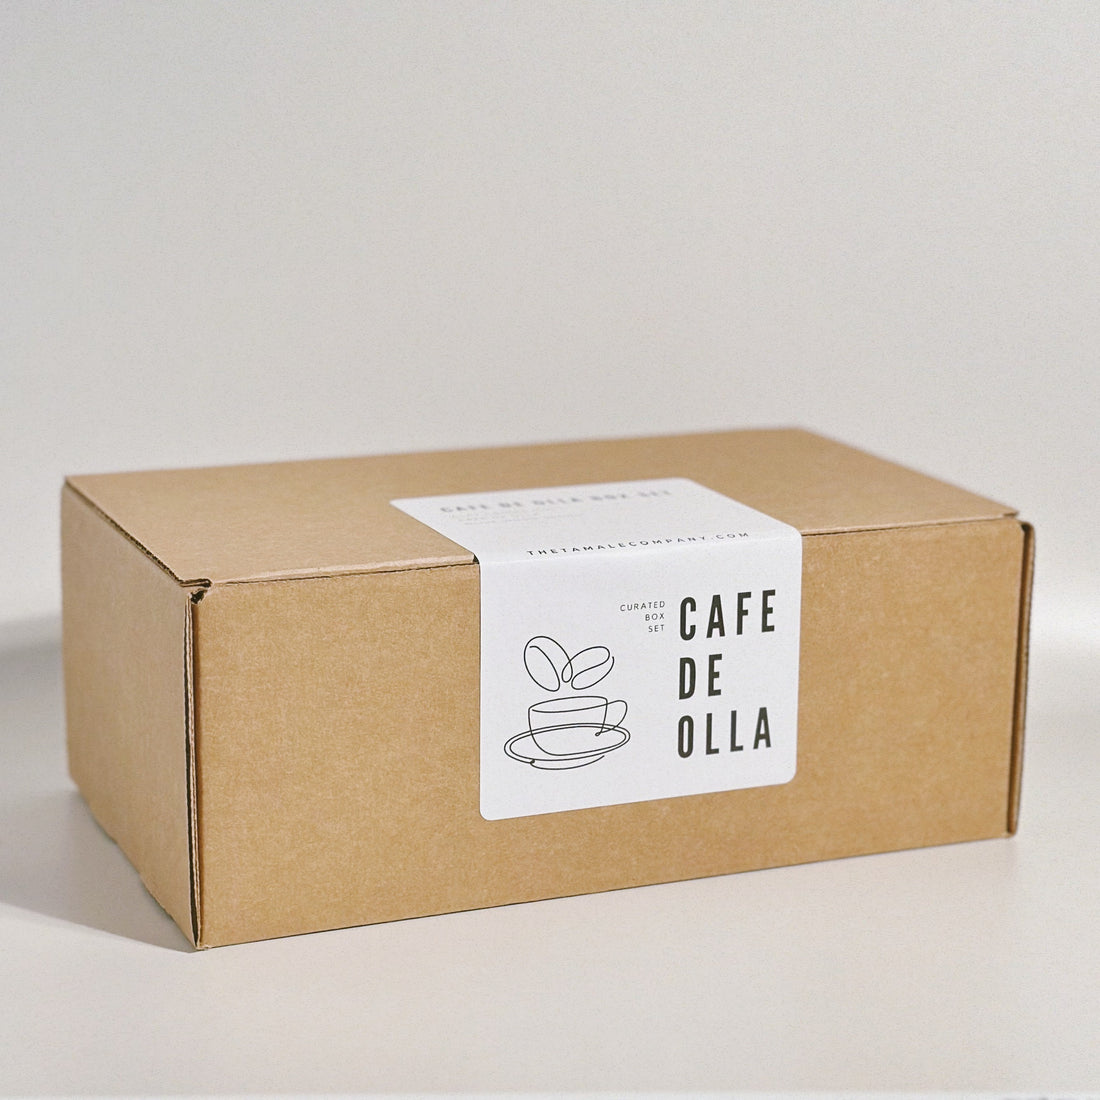 Cafe de Olla Box Set 